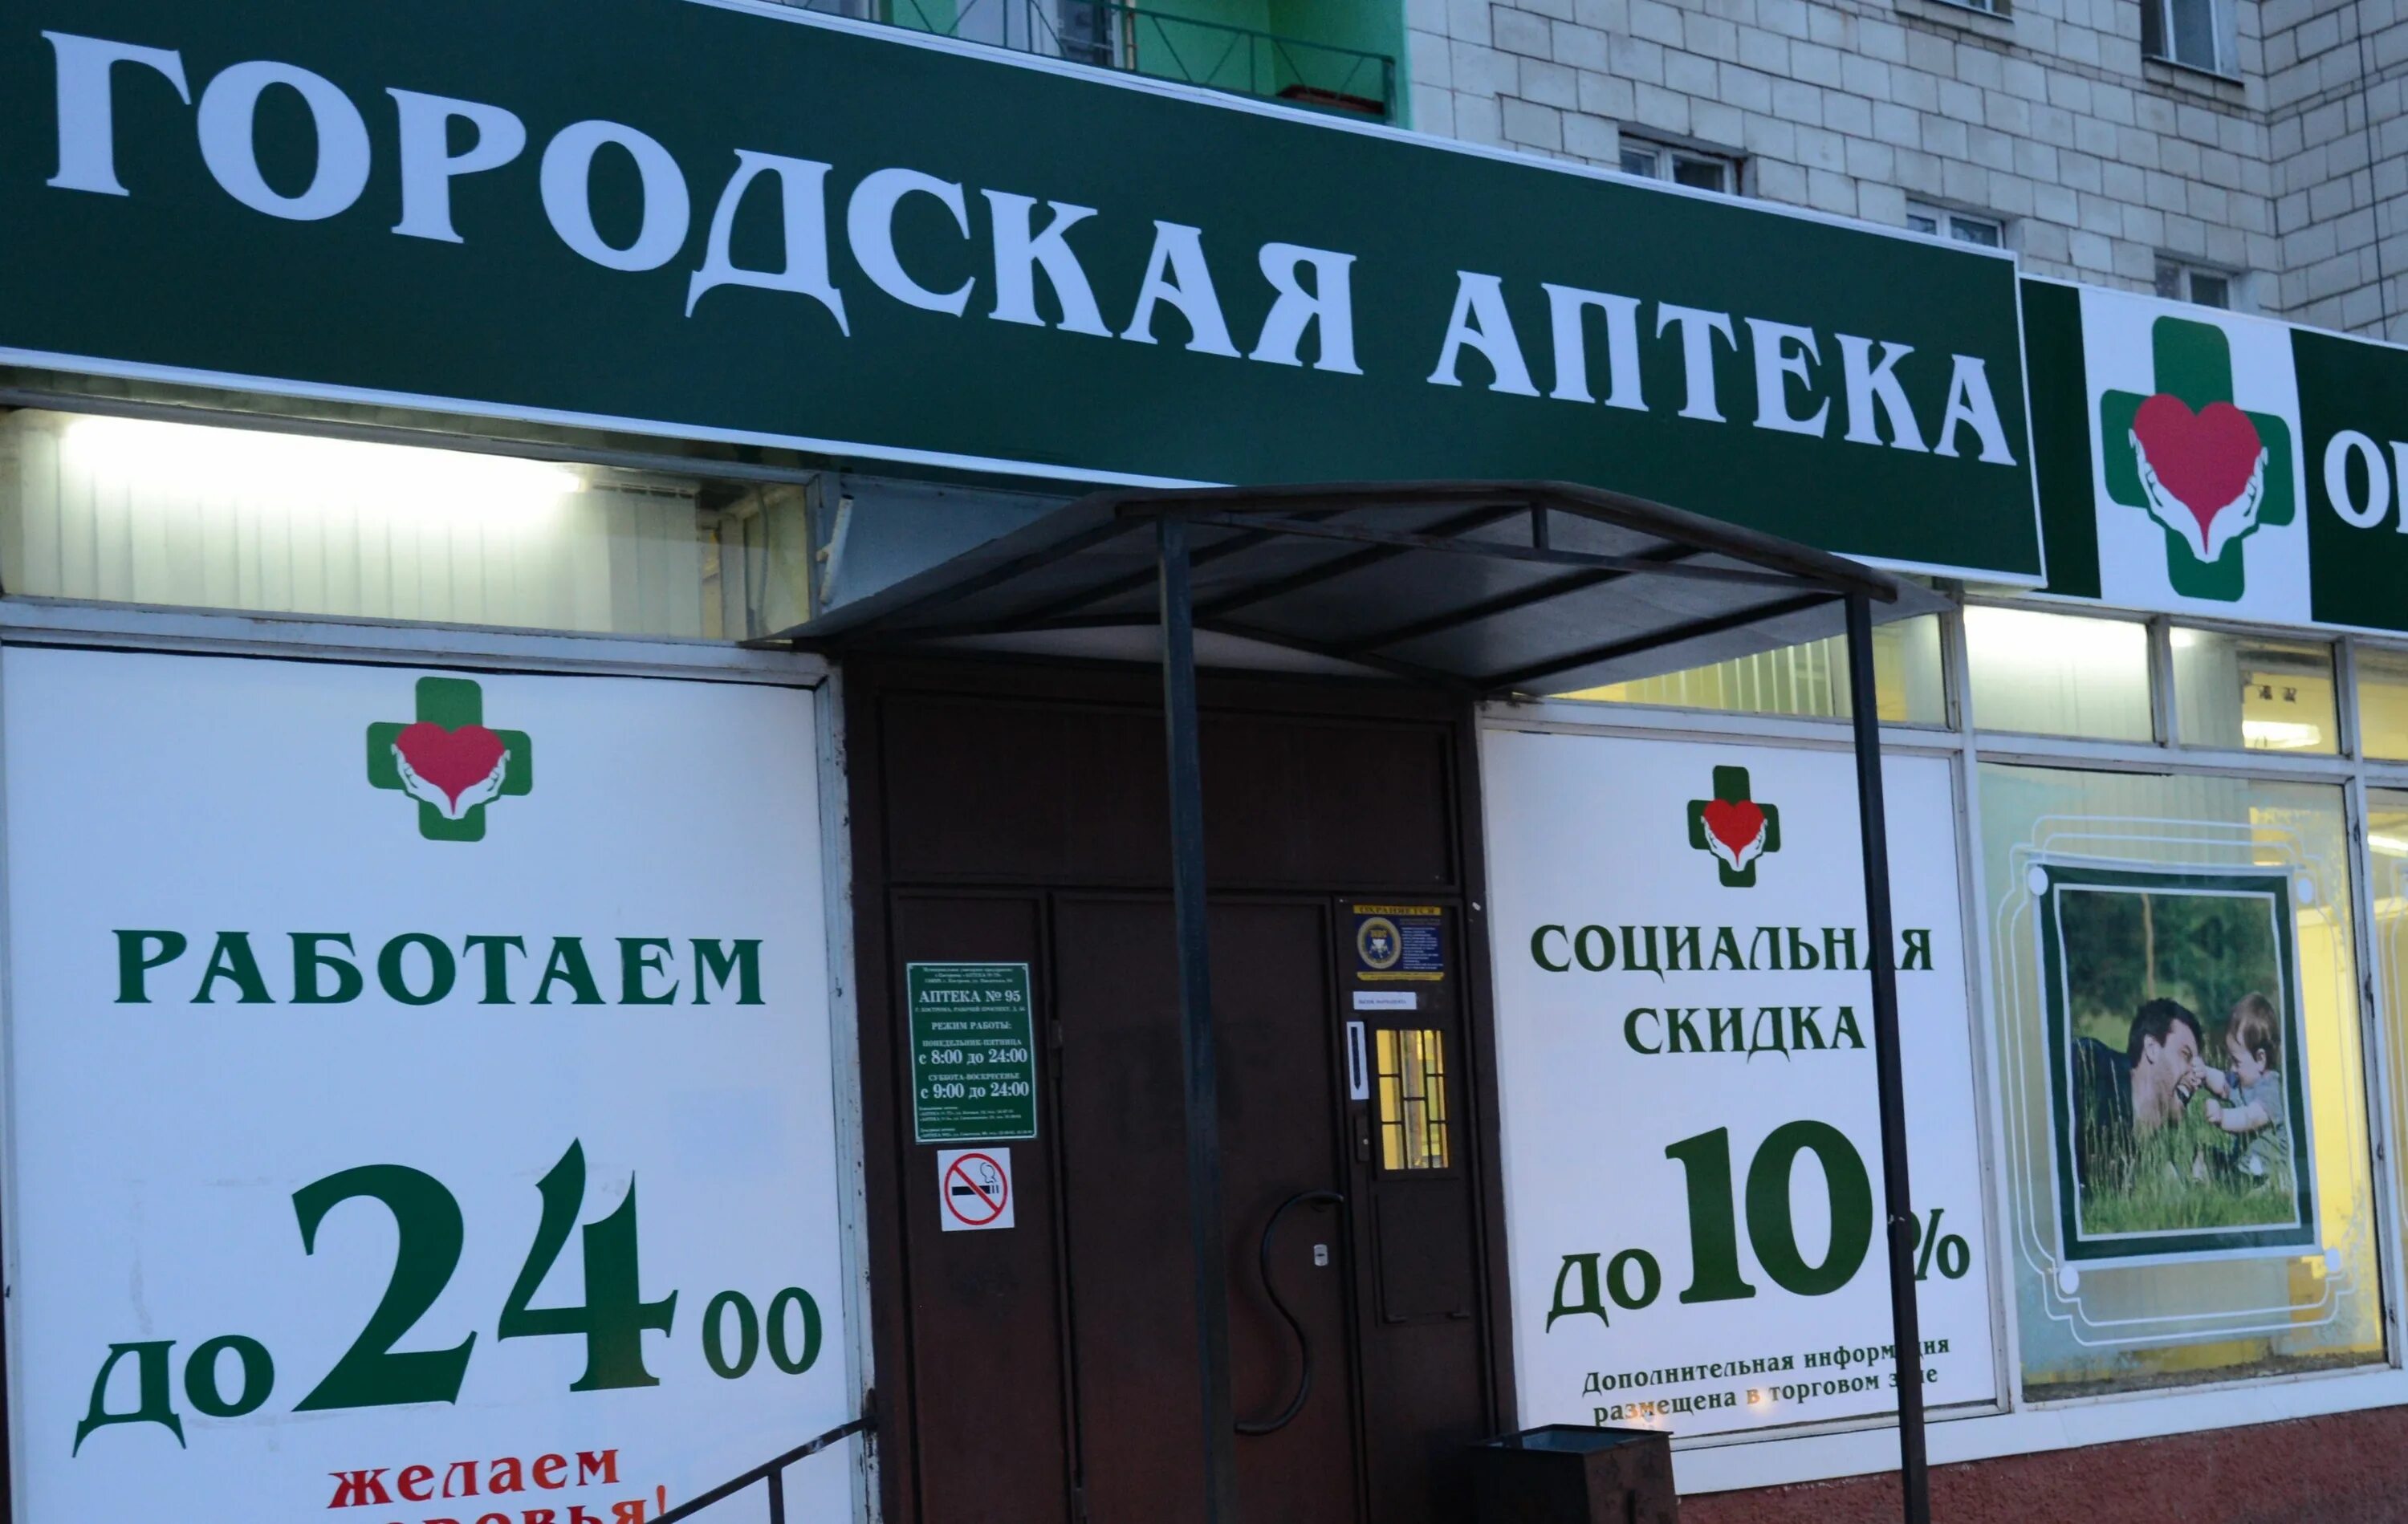 Городская аптека. Аптека в городе. Муниципальная аптека. Городская аптека на Московской.